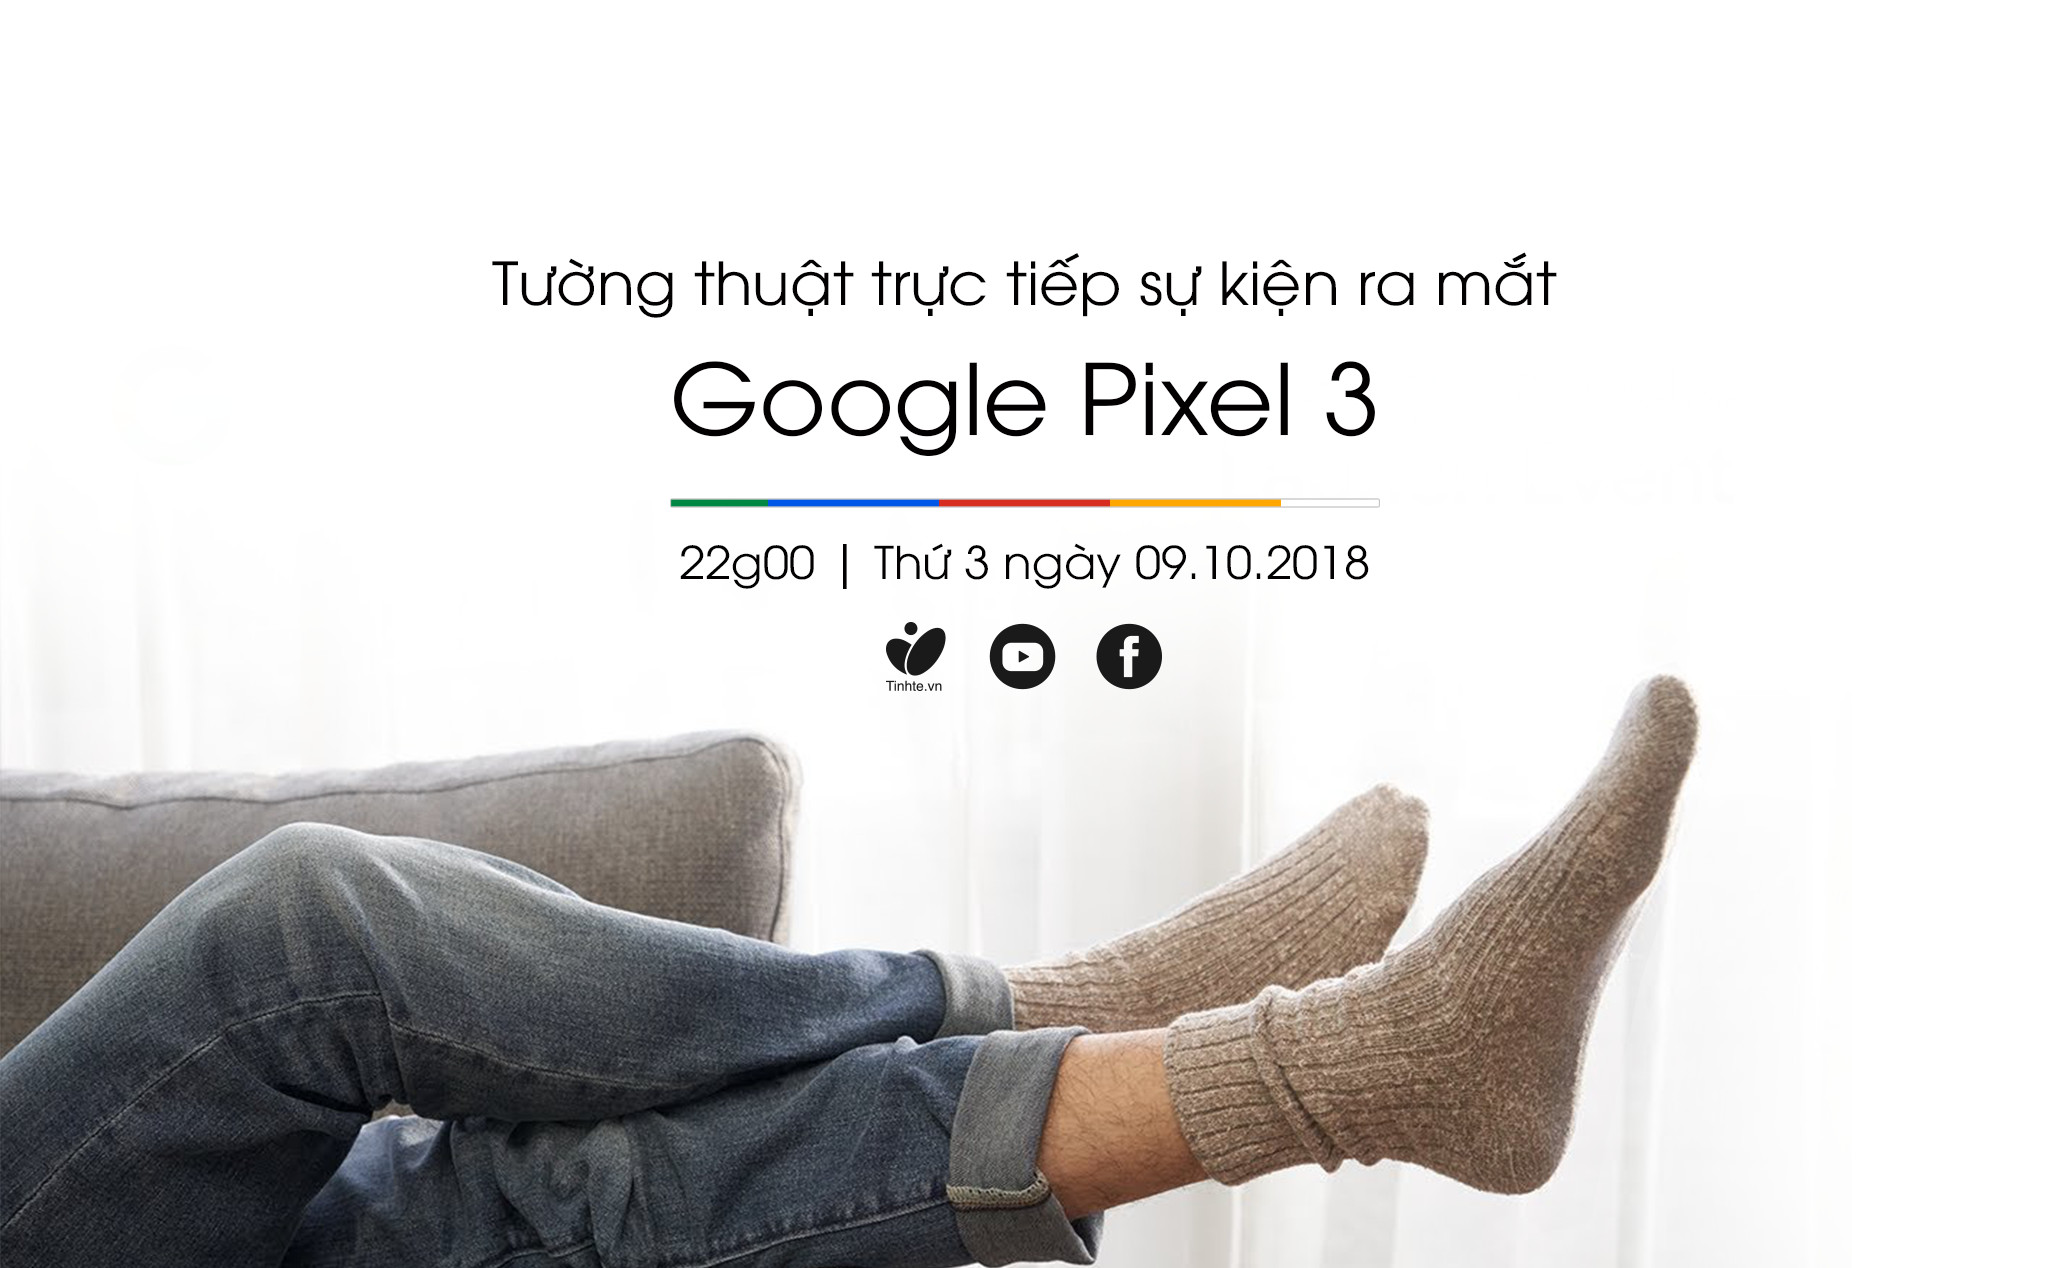 Tối nay, 22 giờ: tường thuật trực tiếp sự kiện ra mắt Google Pixel 3